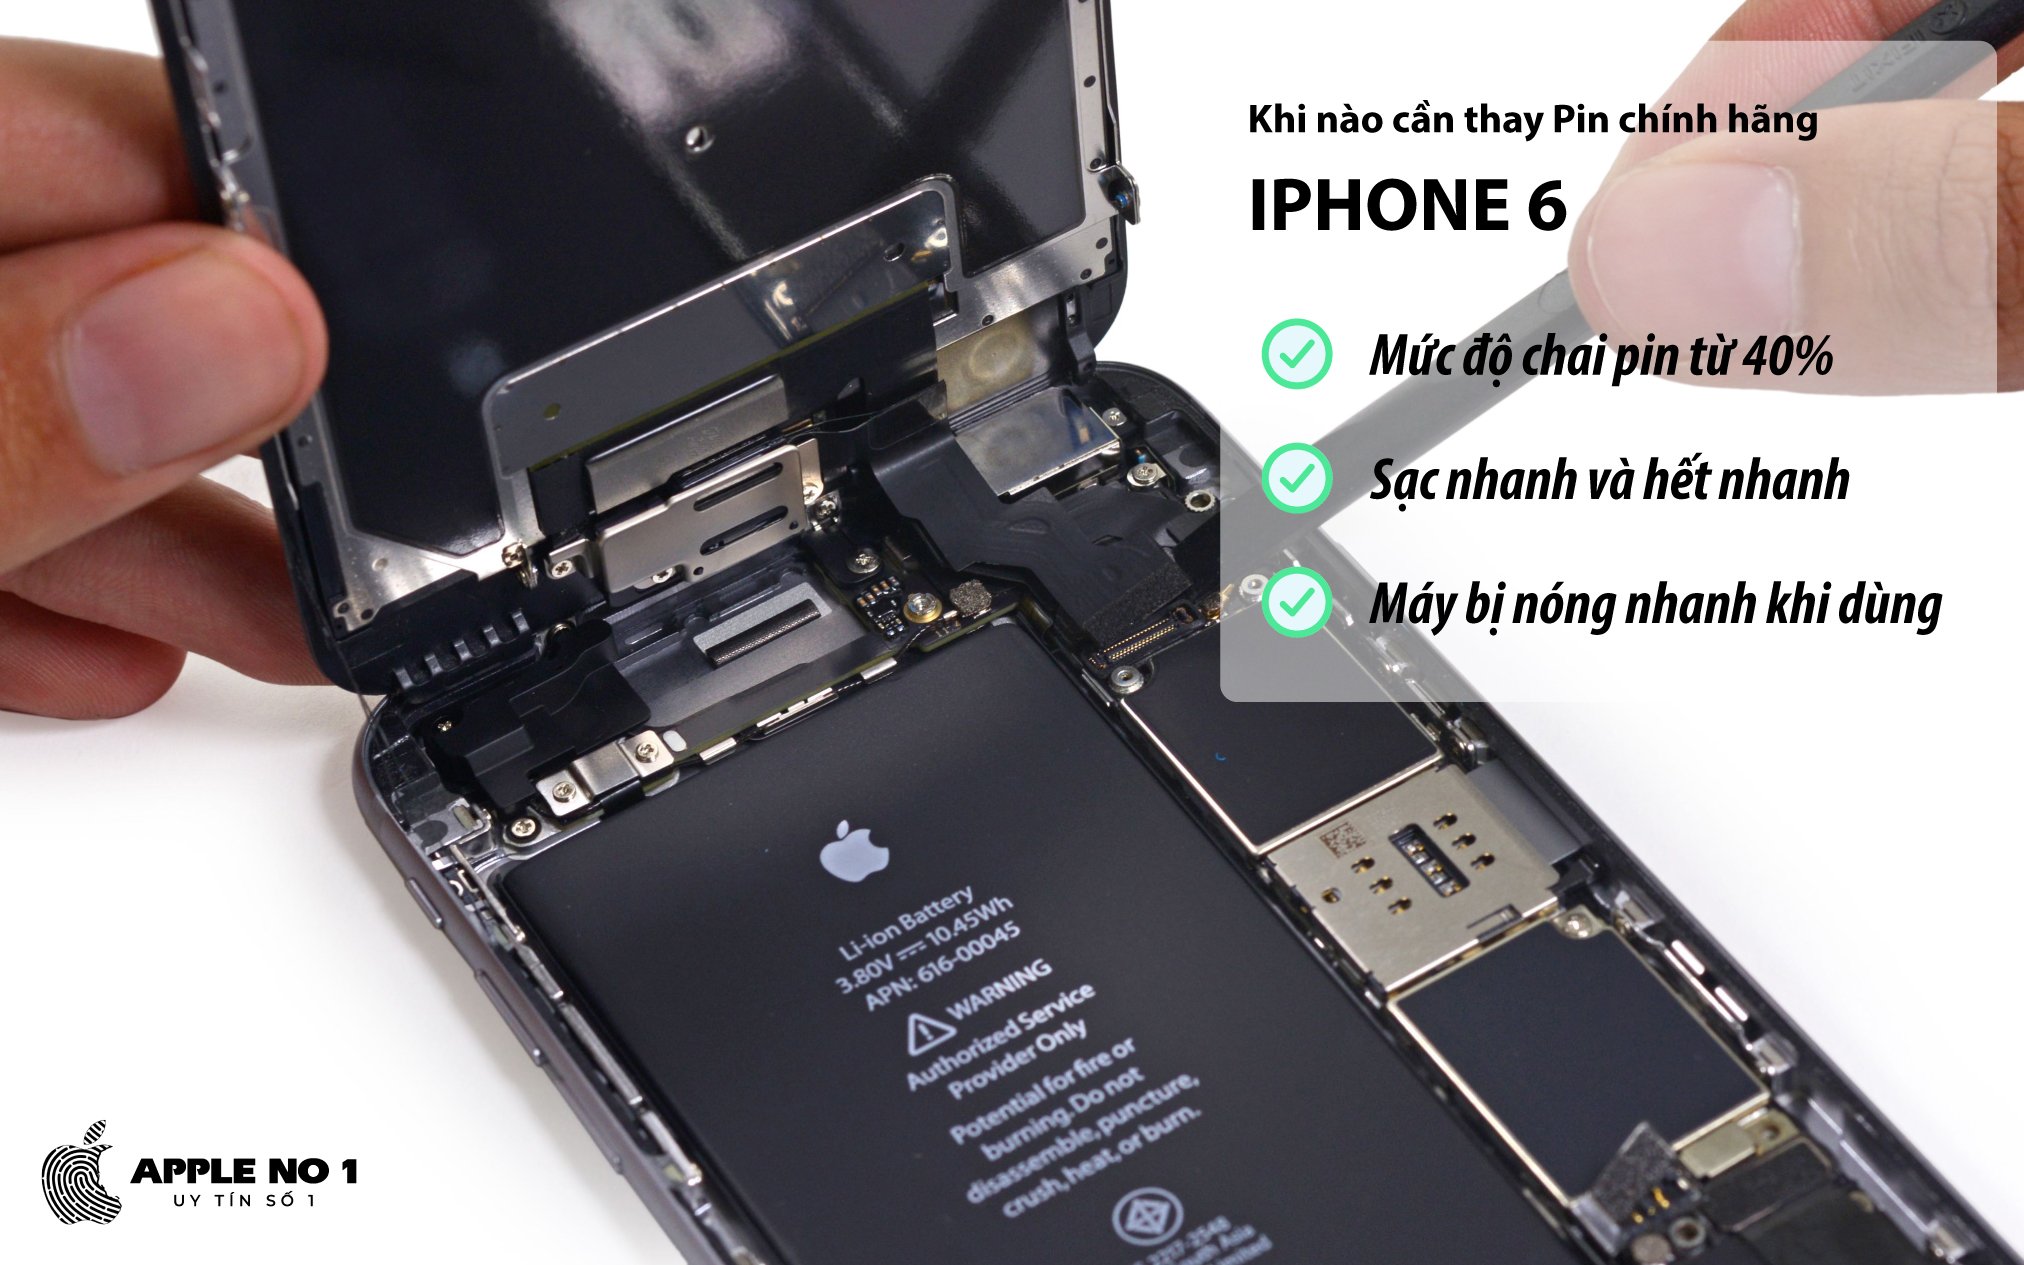 Khi nao can thay pin iPhone 6 chinh hang?